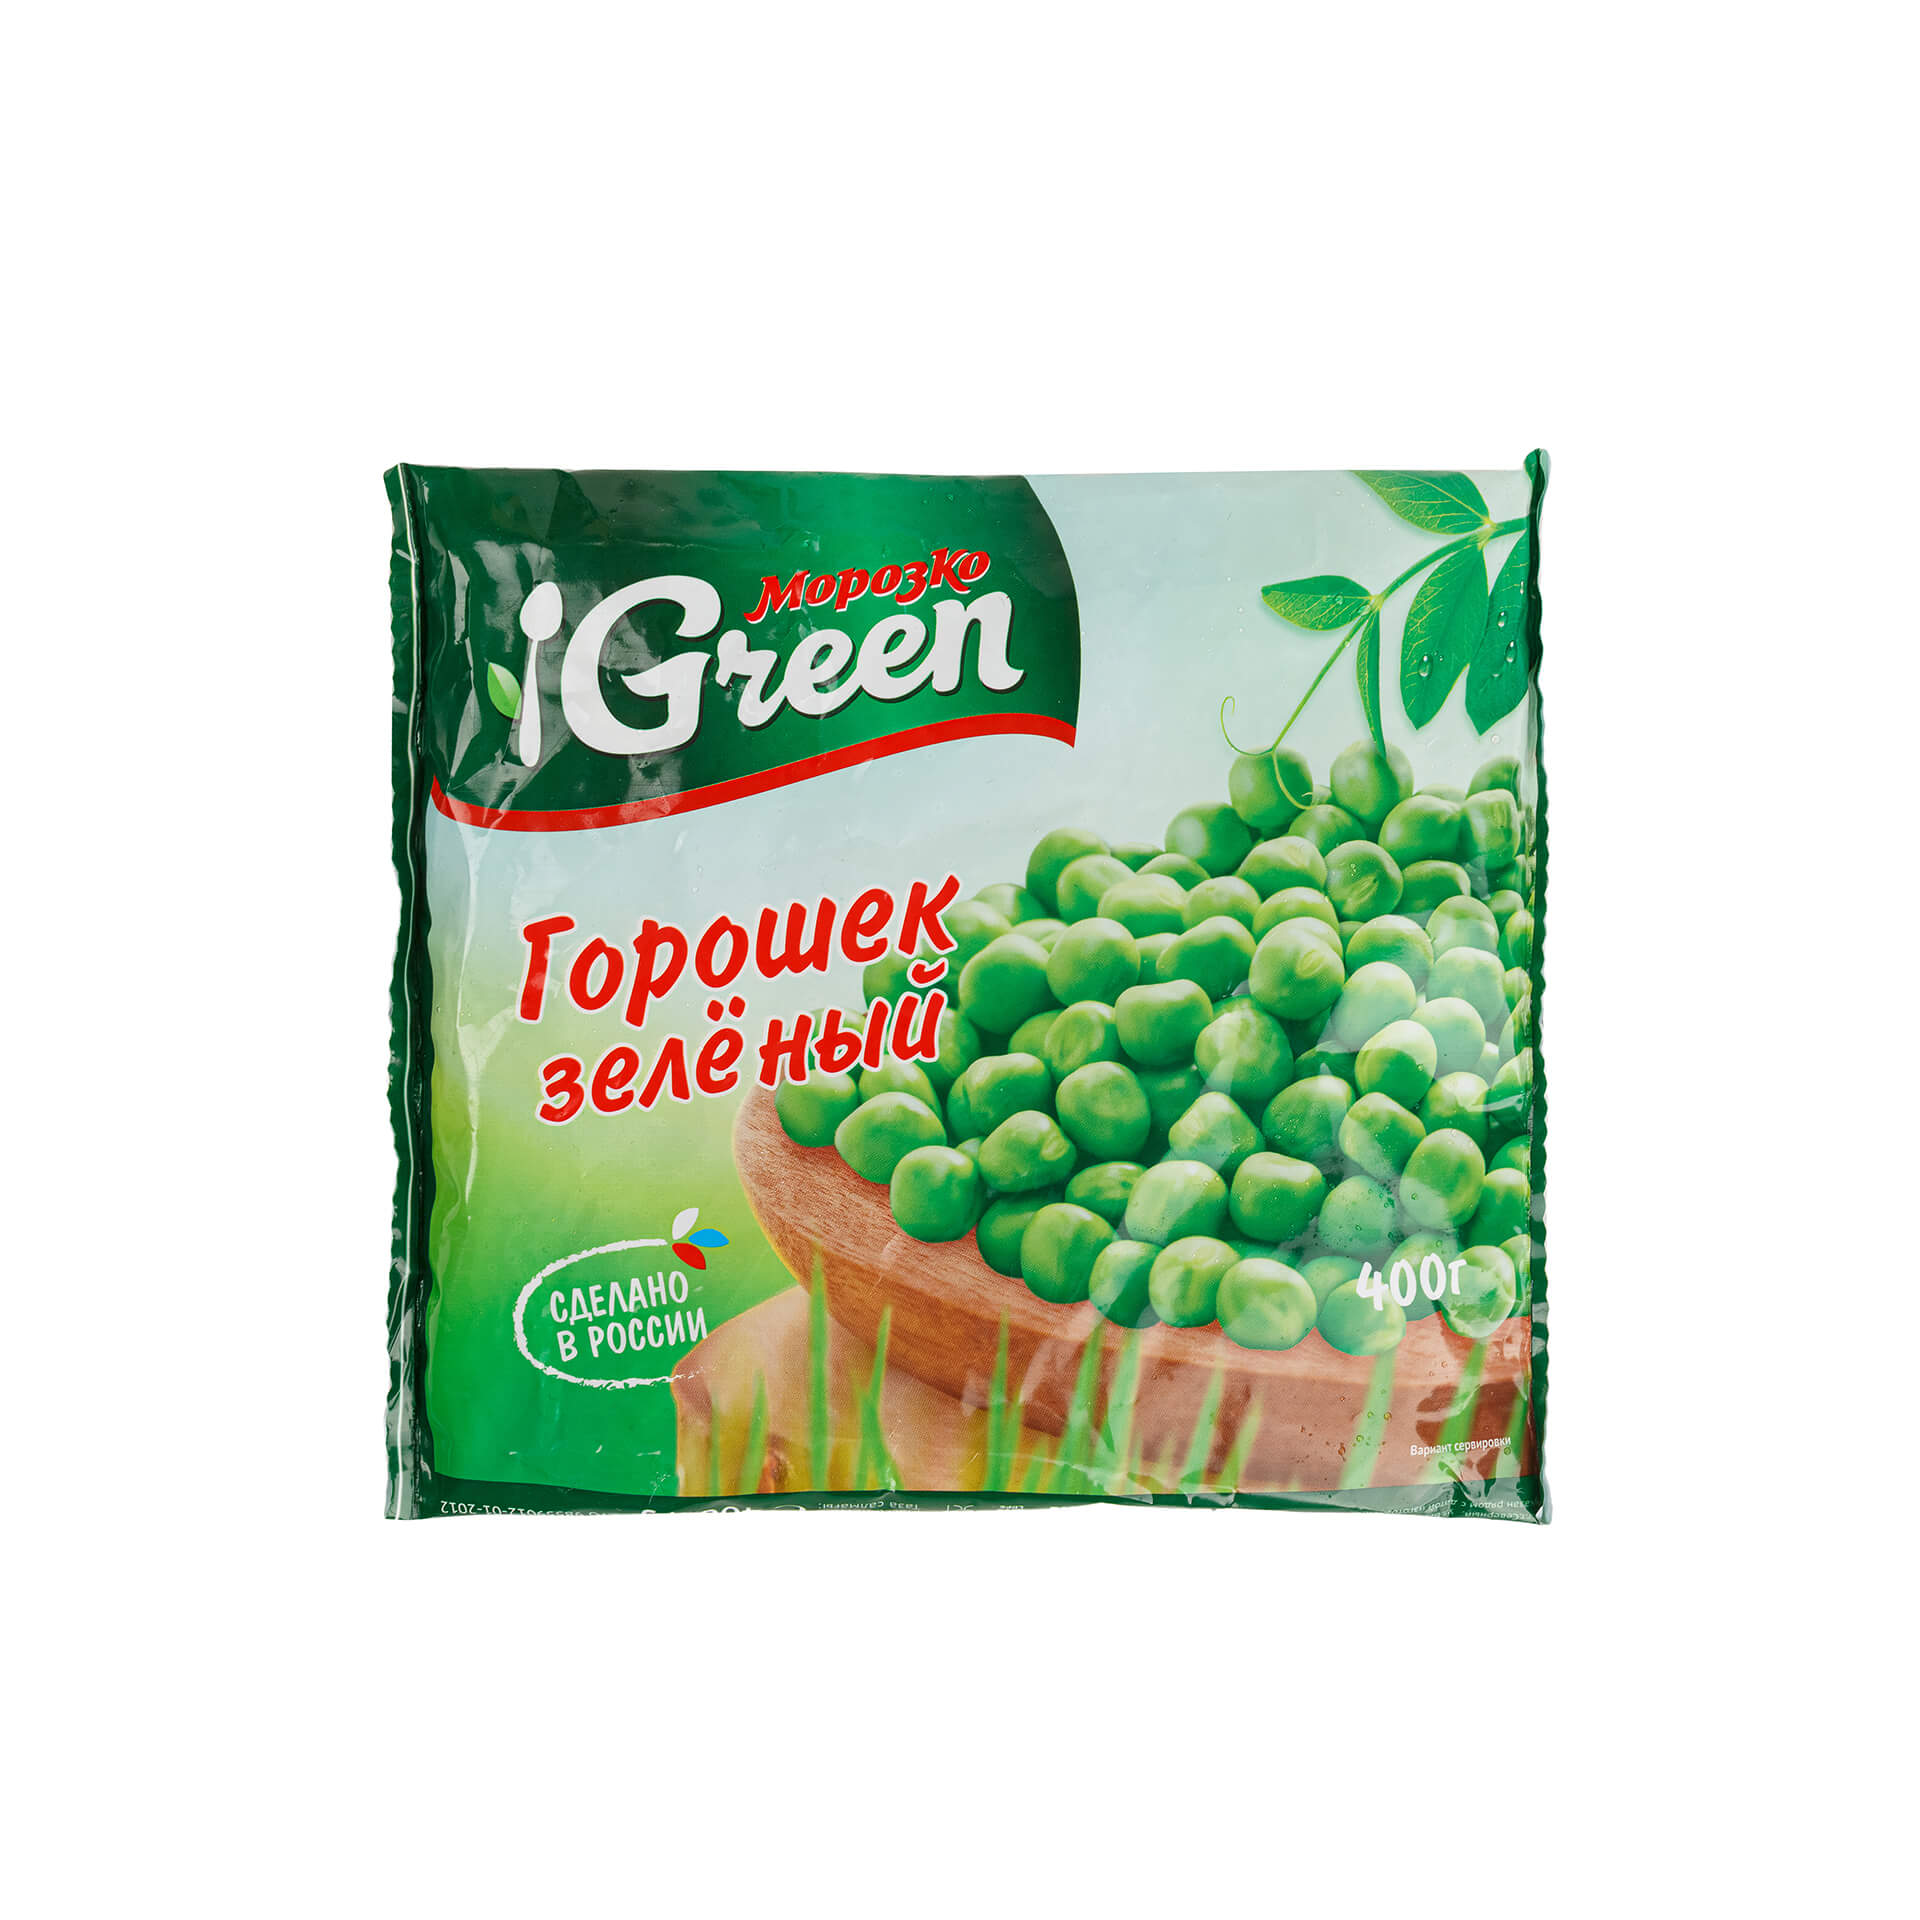 Быстрозамороженный зеленый горошек Морозко Green 400 г 8246LED, общий вид, купить оптом с доставкой по москве и московской области, недорого, низкая цена